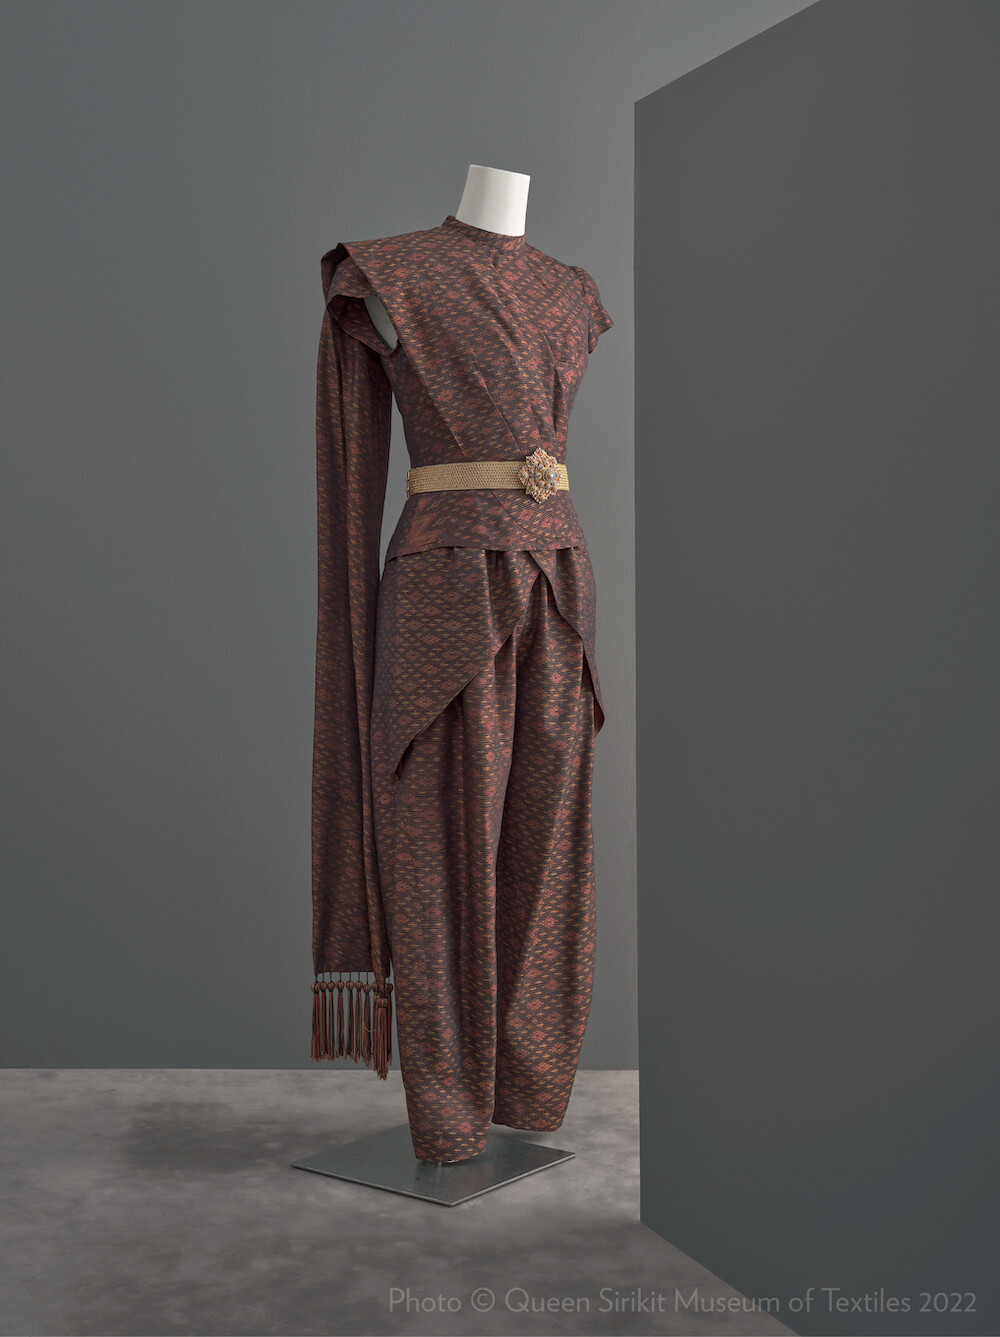 พิพิธภัณฑ์ผ้าฯ ชวนชม 12 ฉลองพระองค์ไฮไลท์  5 ยุคสมัย  ใน "สิริราชพัสตราบรมราชินีนาถ"